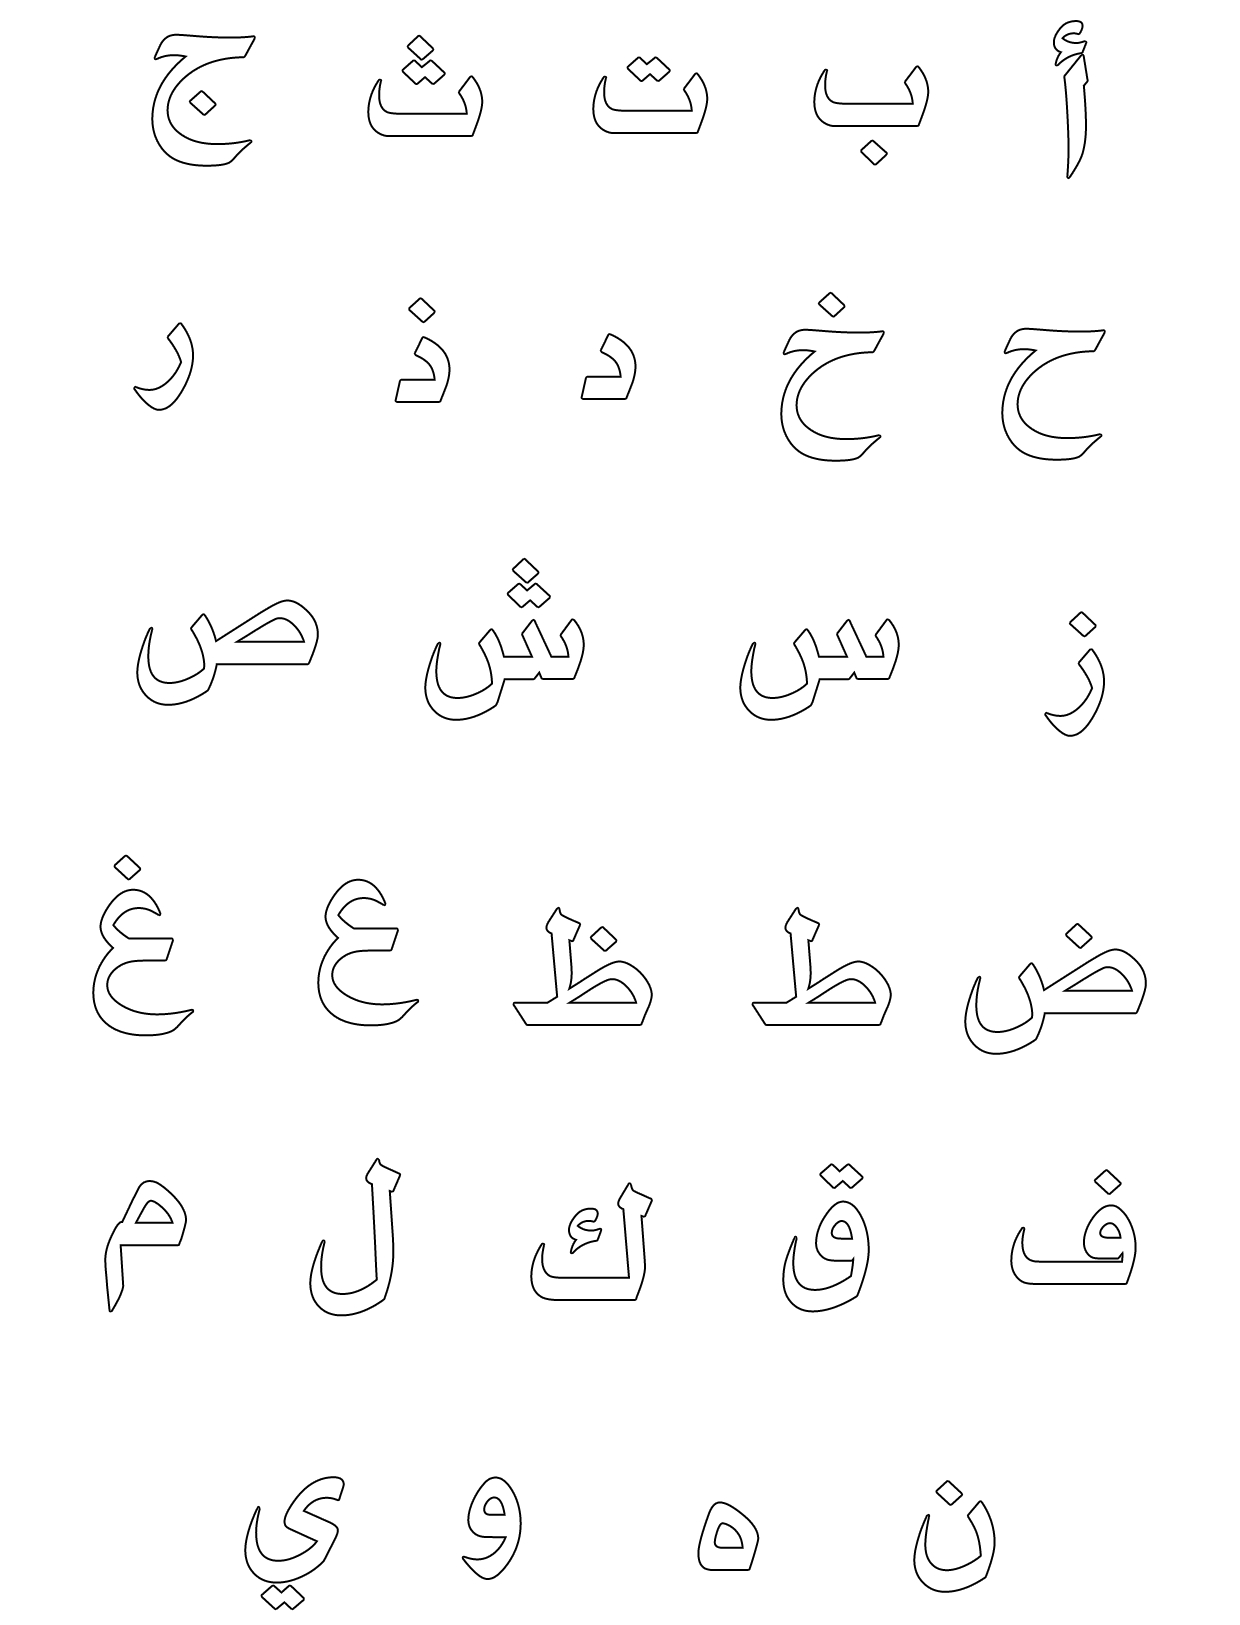 كراسة تلوين الحروف العربية